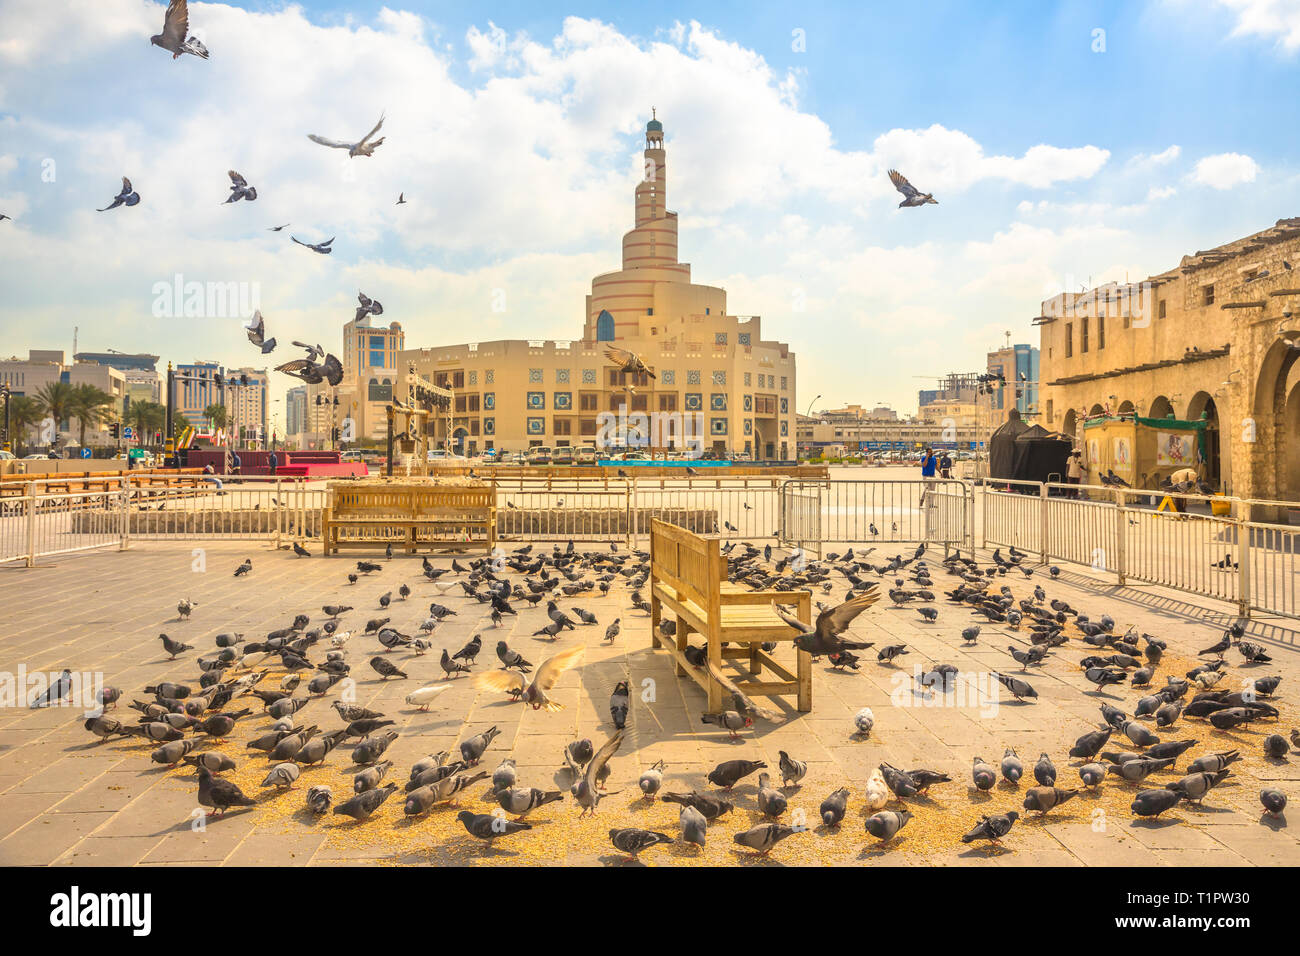 Doha, Qatar - 20 Février 2019 : de nombreux pigeons voler dans Souq Waqif square. Moyen-orient, Péninsule Arabique, du golfe Persique. Fanar Centre culturel islamique Banque D'Images